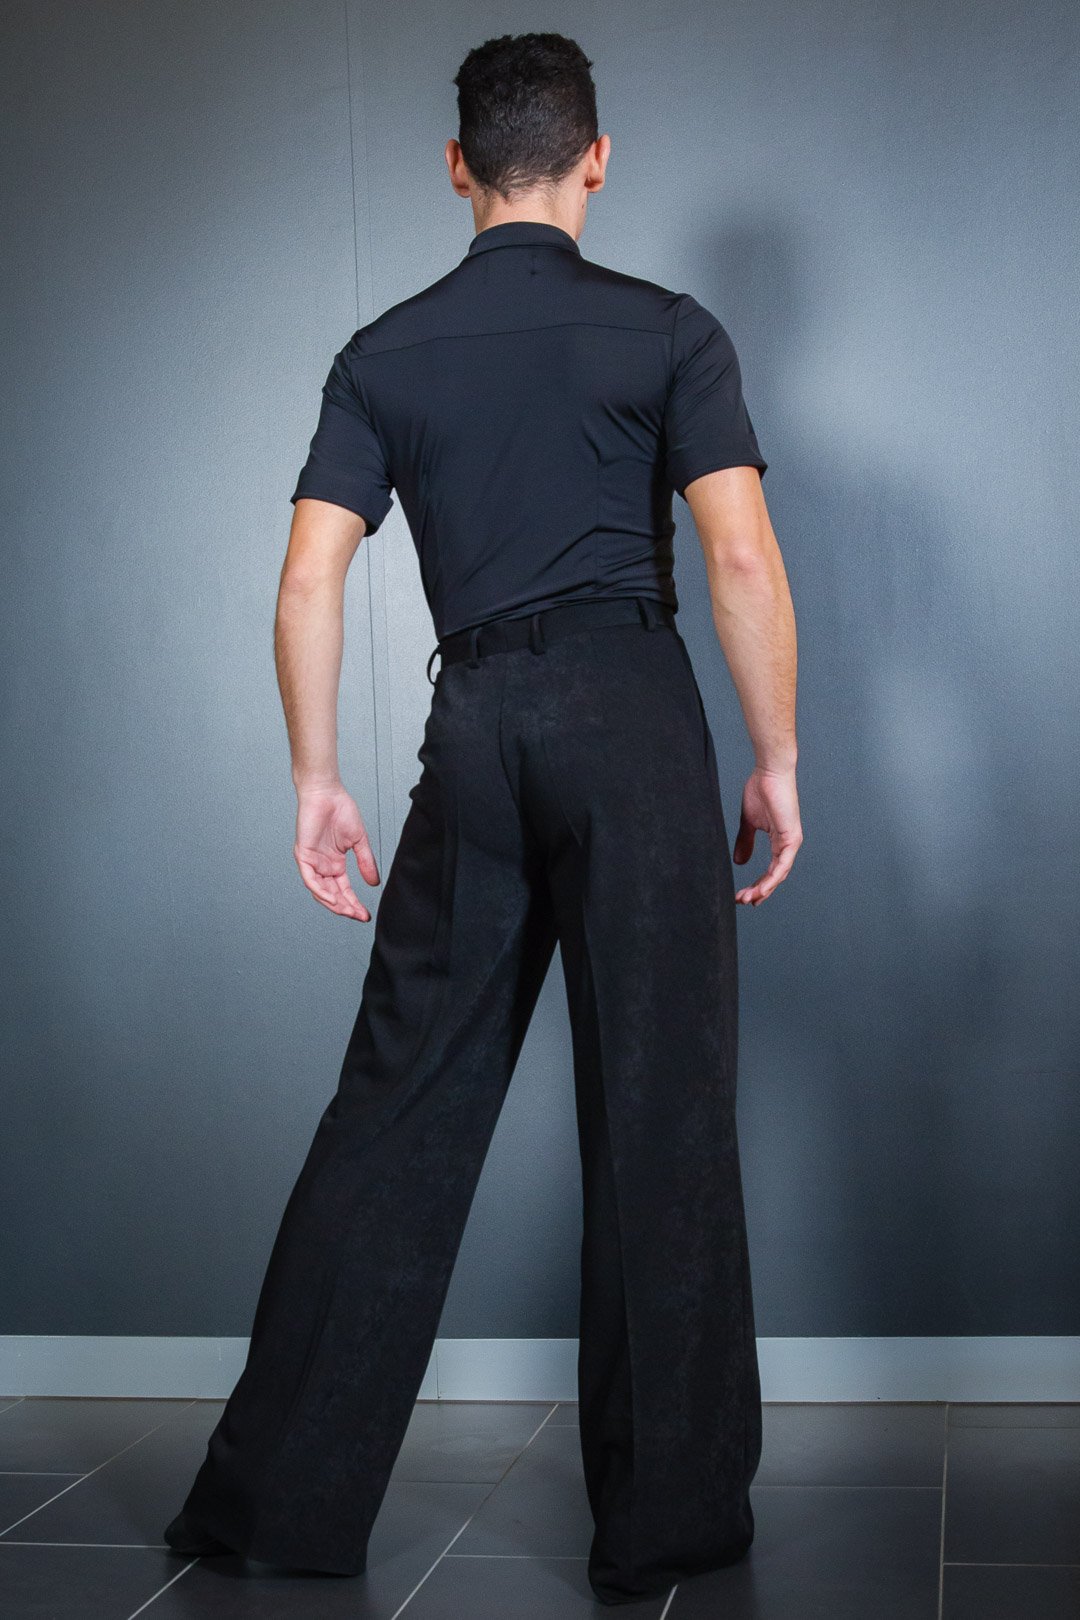 Je'Dor Dancewear — B9435 Men's Tailor Dance Pants